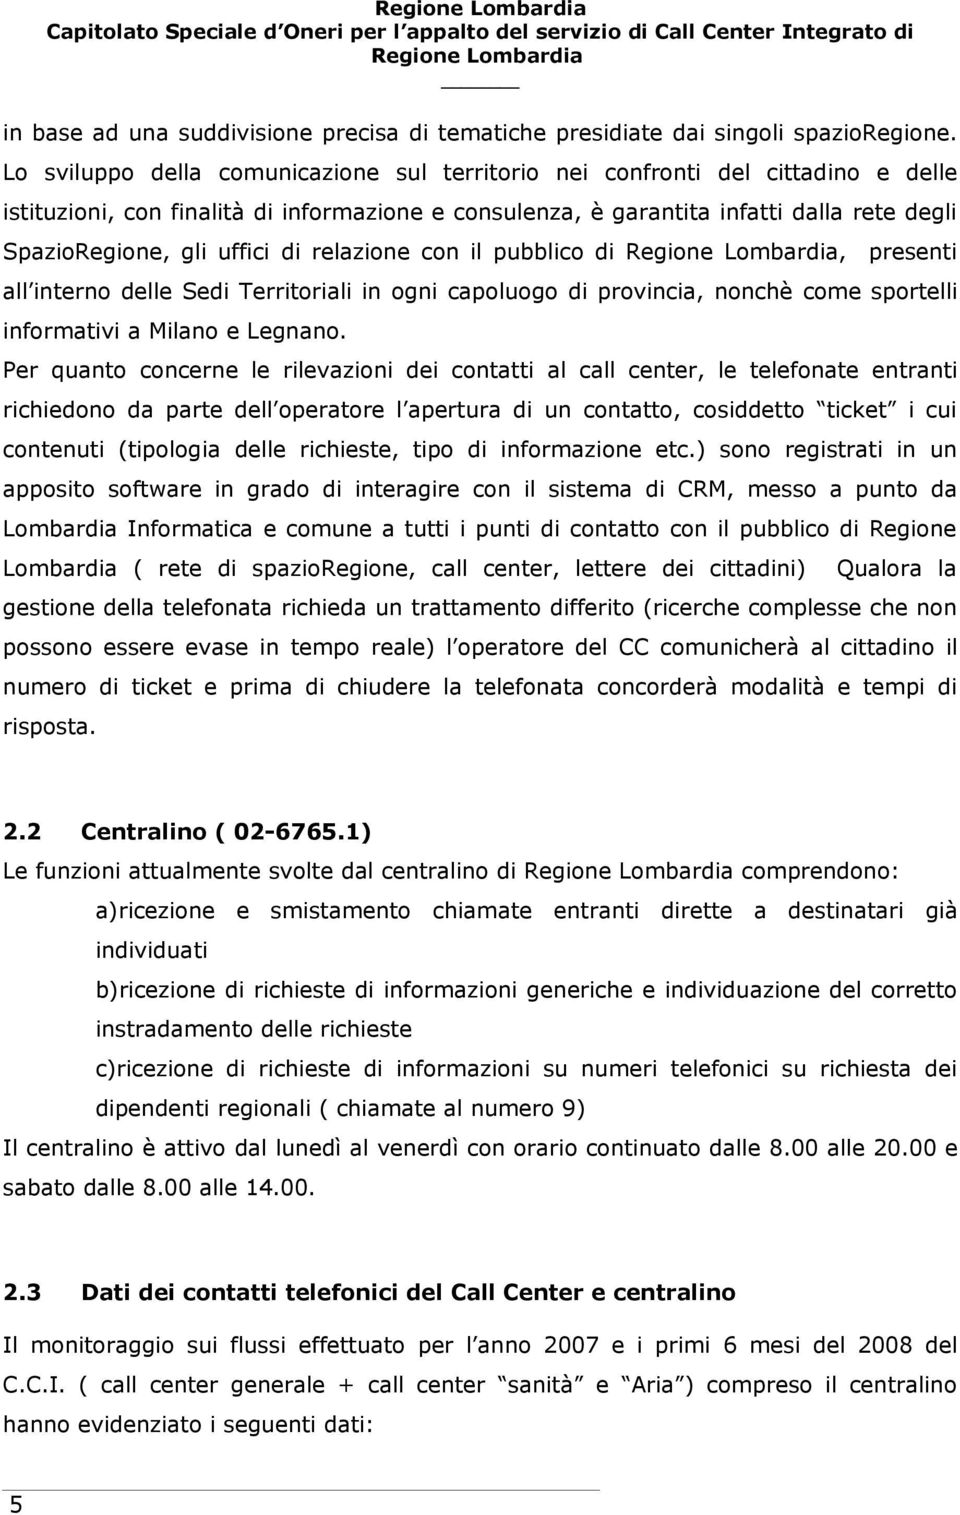 uffici di relazione con il pubblico di, presenti all interno delle Sedi Territoriali in ogni capoluogo di provincia, nonchè come sportelli informativi a Milano e Legnano.